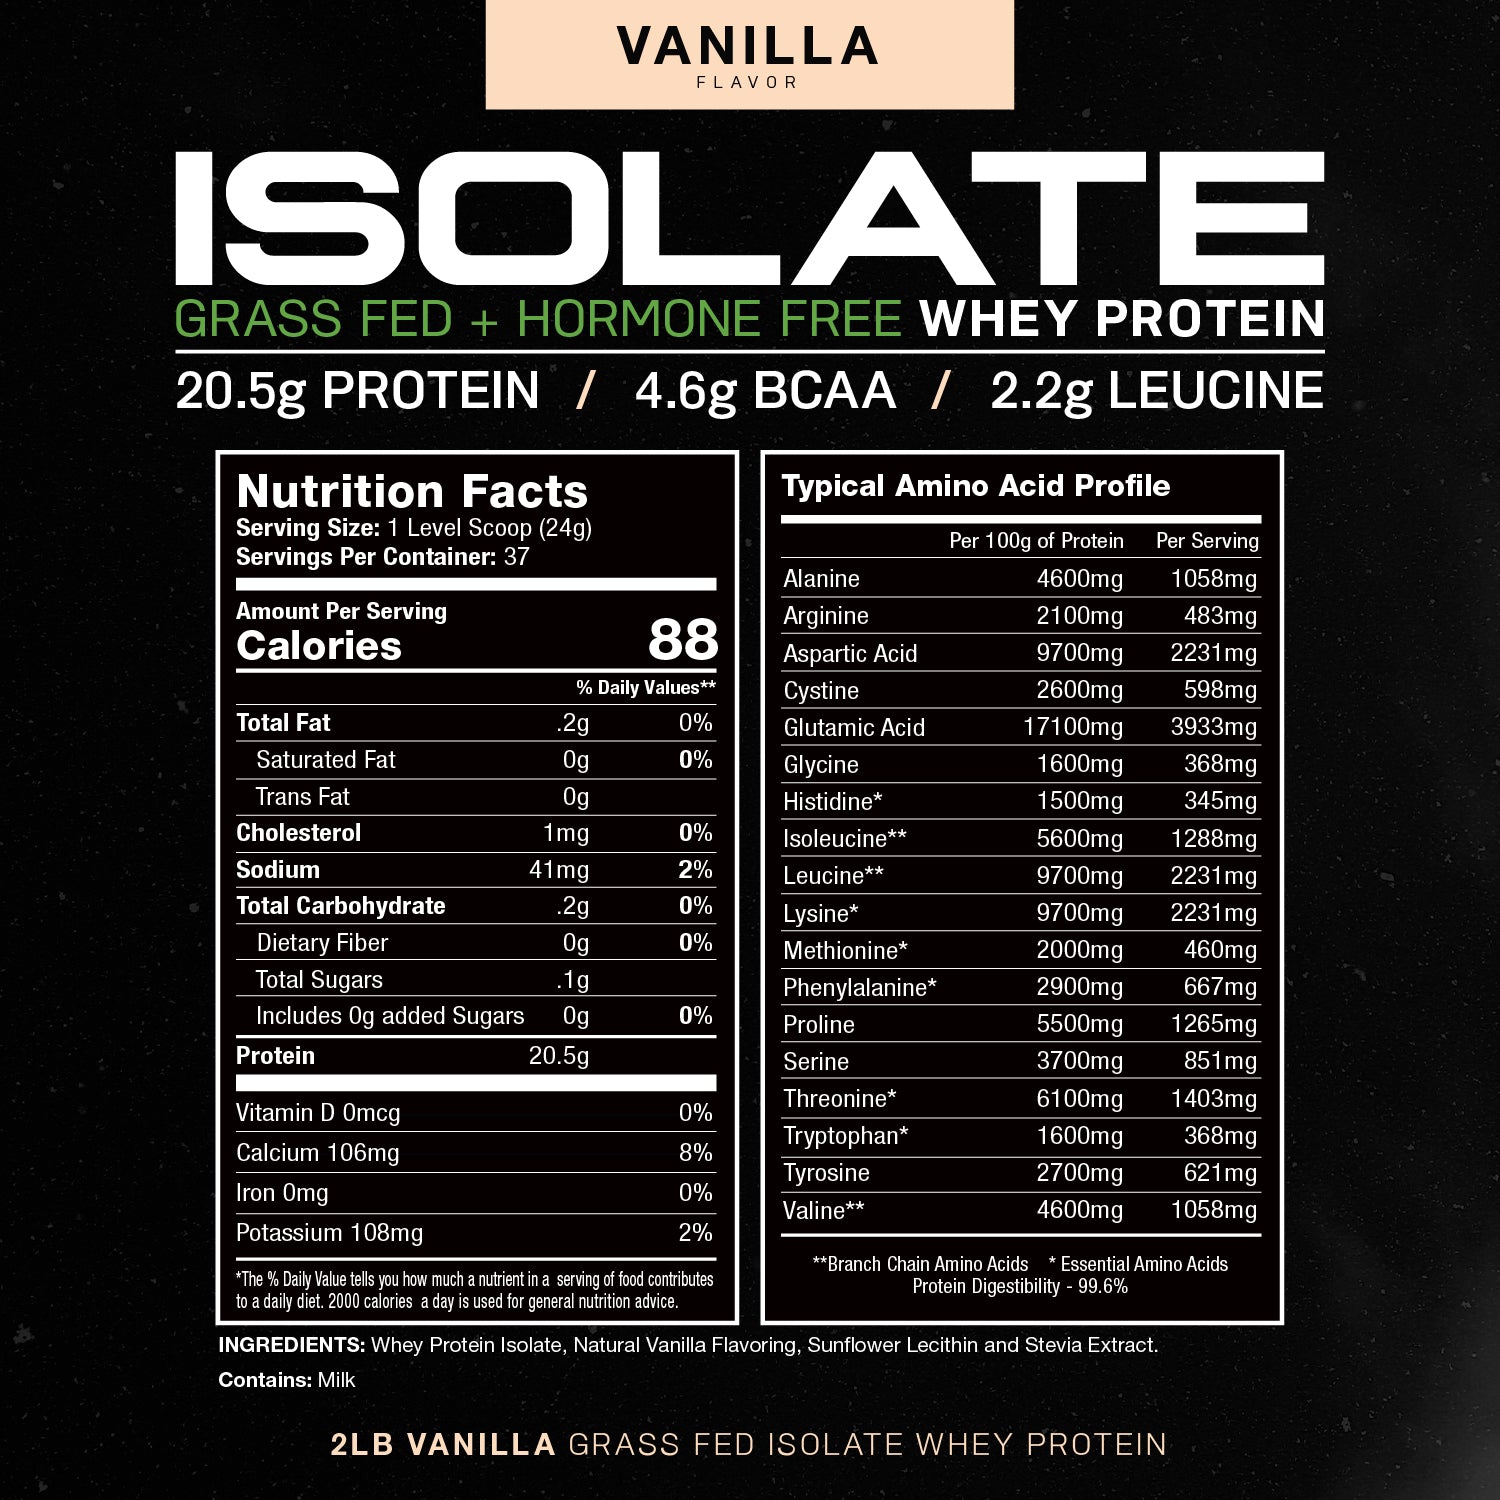 Isolate + Creatine Bundle: 1 Whey Protein Isolate (Vanilla, 2lb) + 1 Creatine Powder (Unflavored, 300g) | Premium Supplements, Vegetarian, Gluten Free